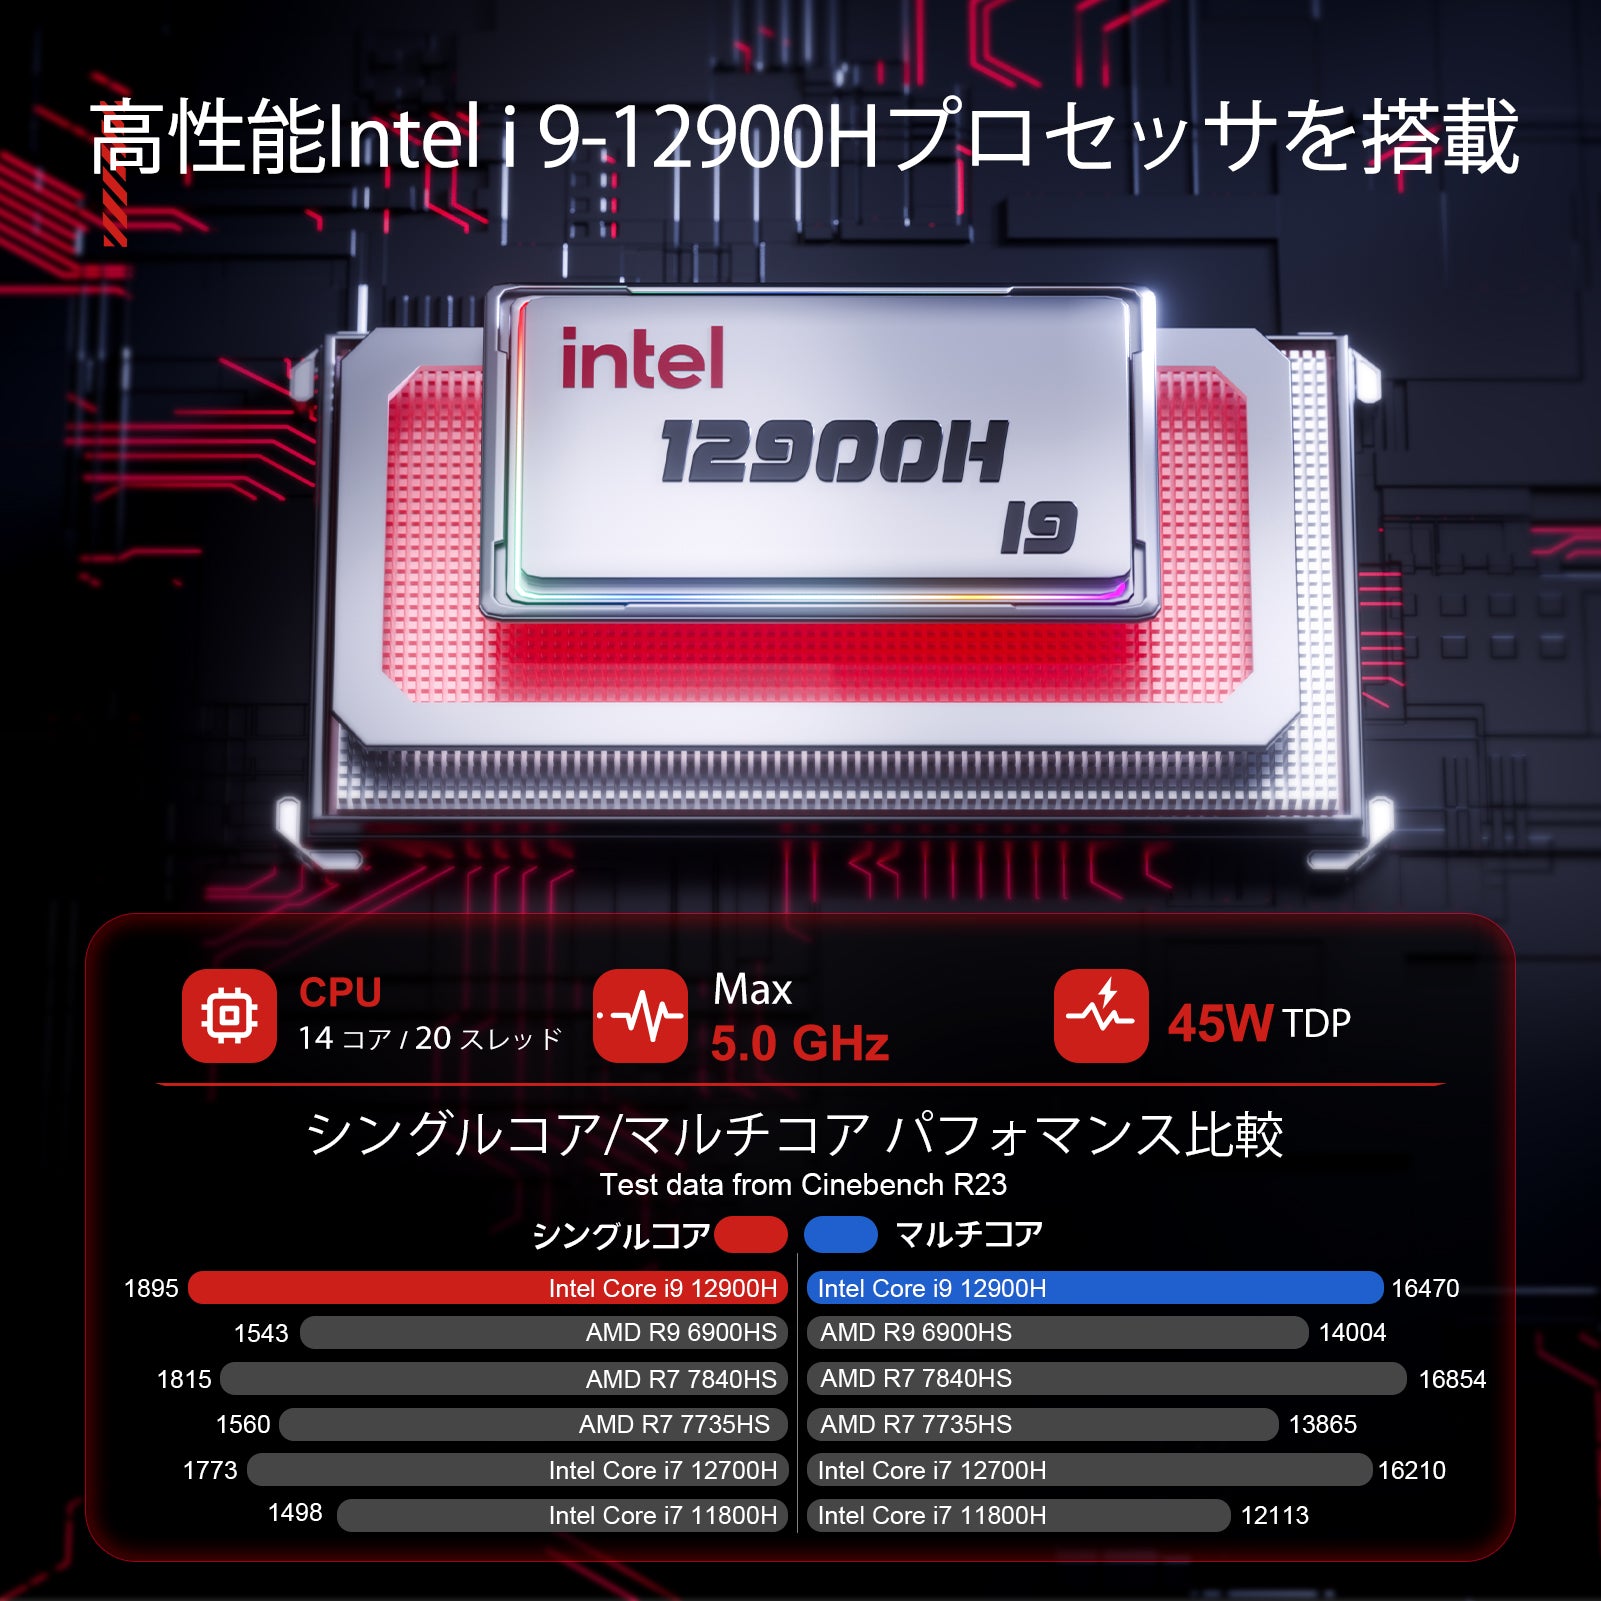 ミニPC 高性能 【Intel core i9 12900H 】【32GB DDR4 512GB SSD PCIE3.0】mini pc 小型省スペースpc【14コア/20スレッド/最大5.0GHz/24MBキャッシュ】4K@60Hz Type-C+HDMI  3画面出力 高速WiFi６ BT5.2 ギガビット